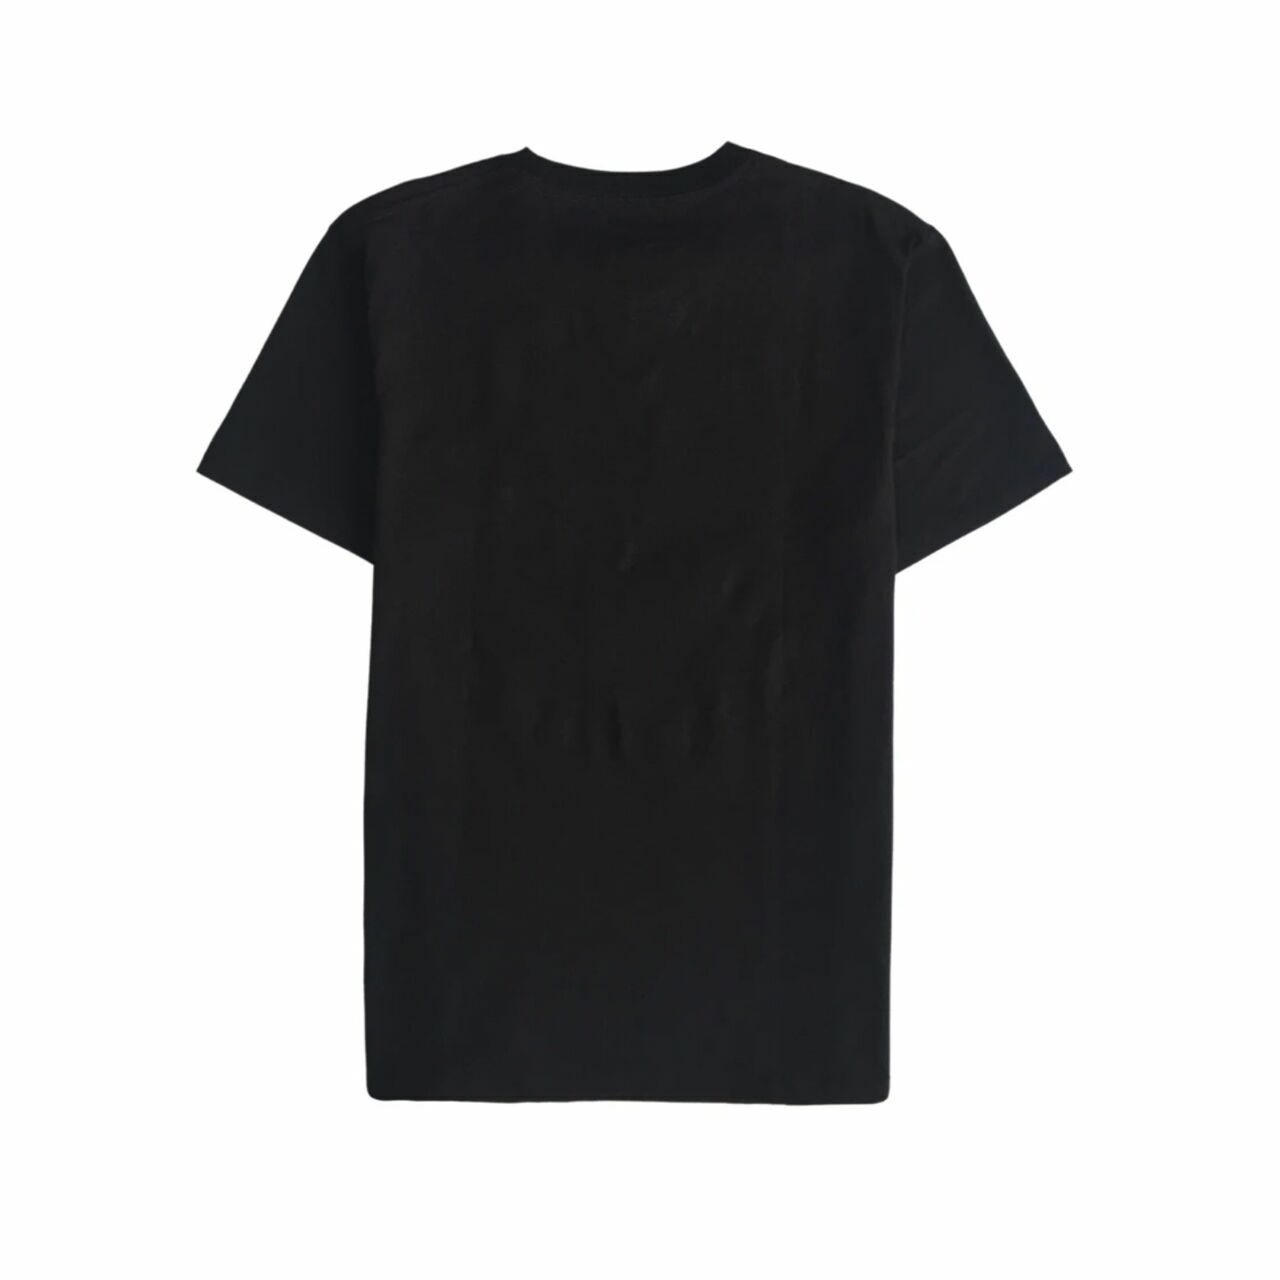 Vlone x Fragment Design Reversible Staple T-Shirt